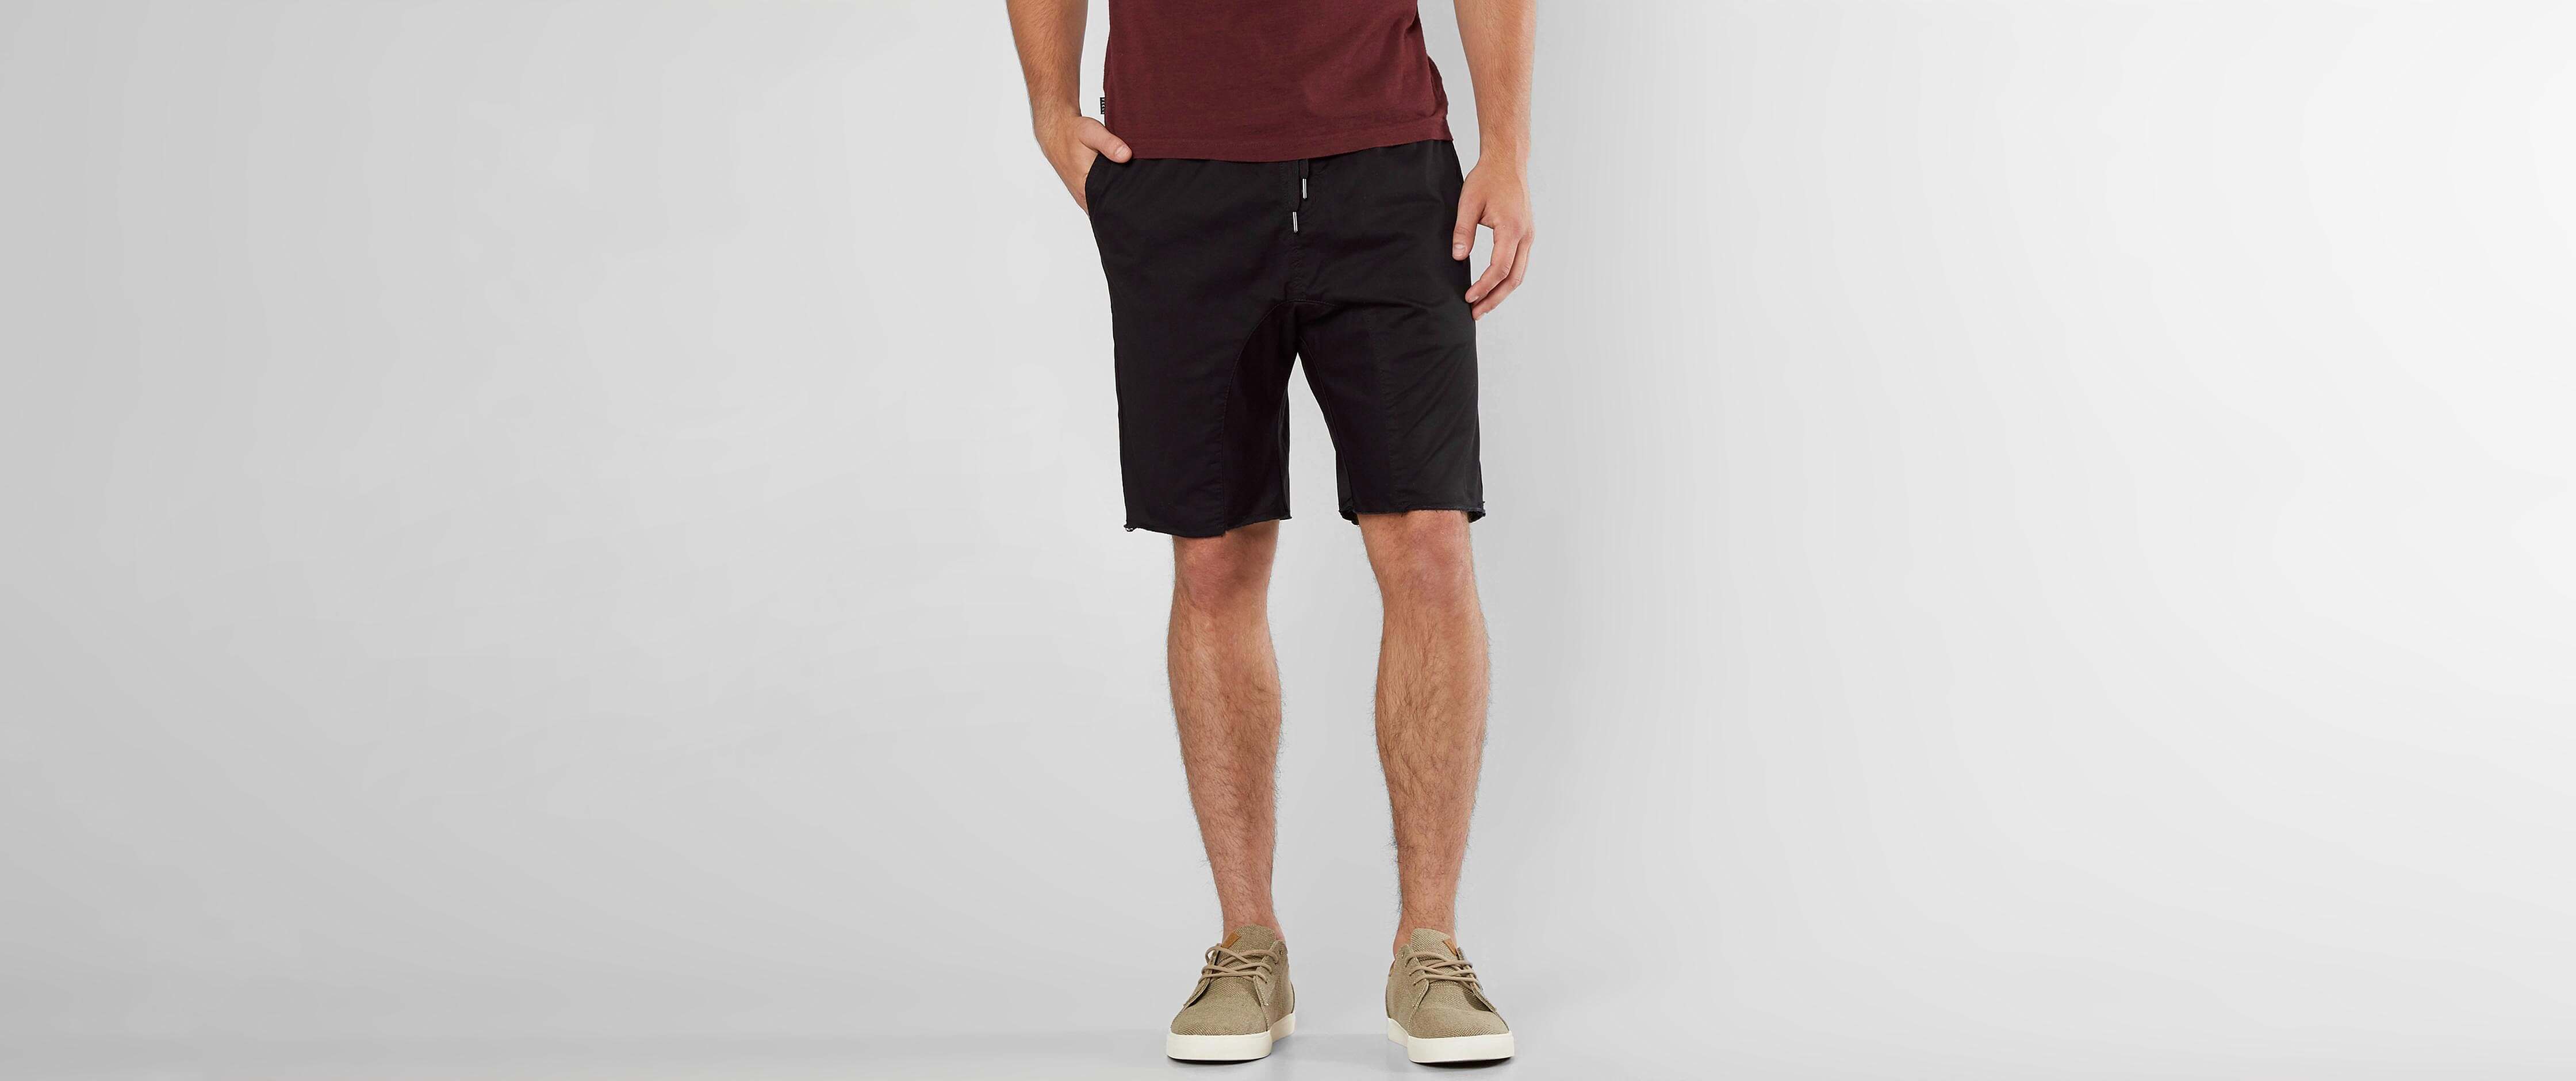 black frayed shorts